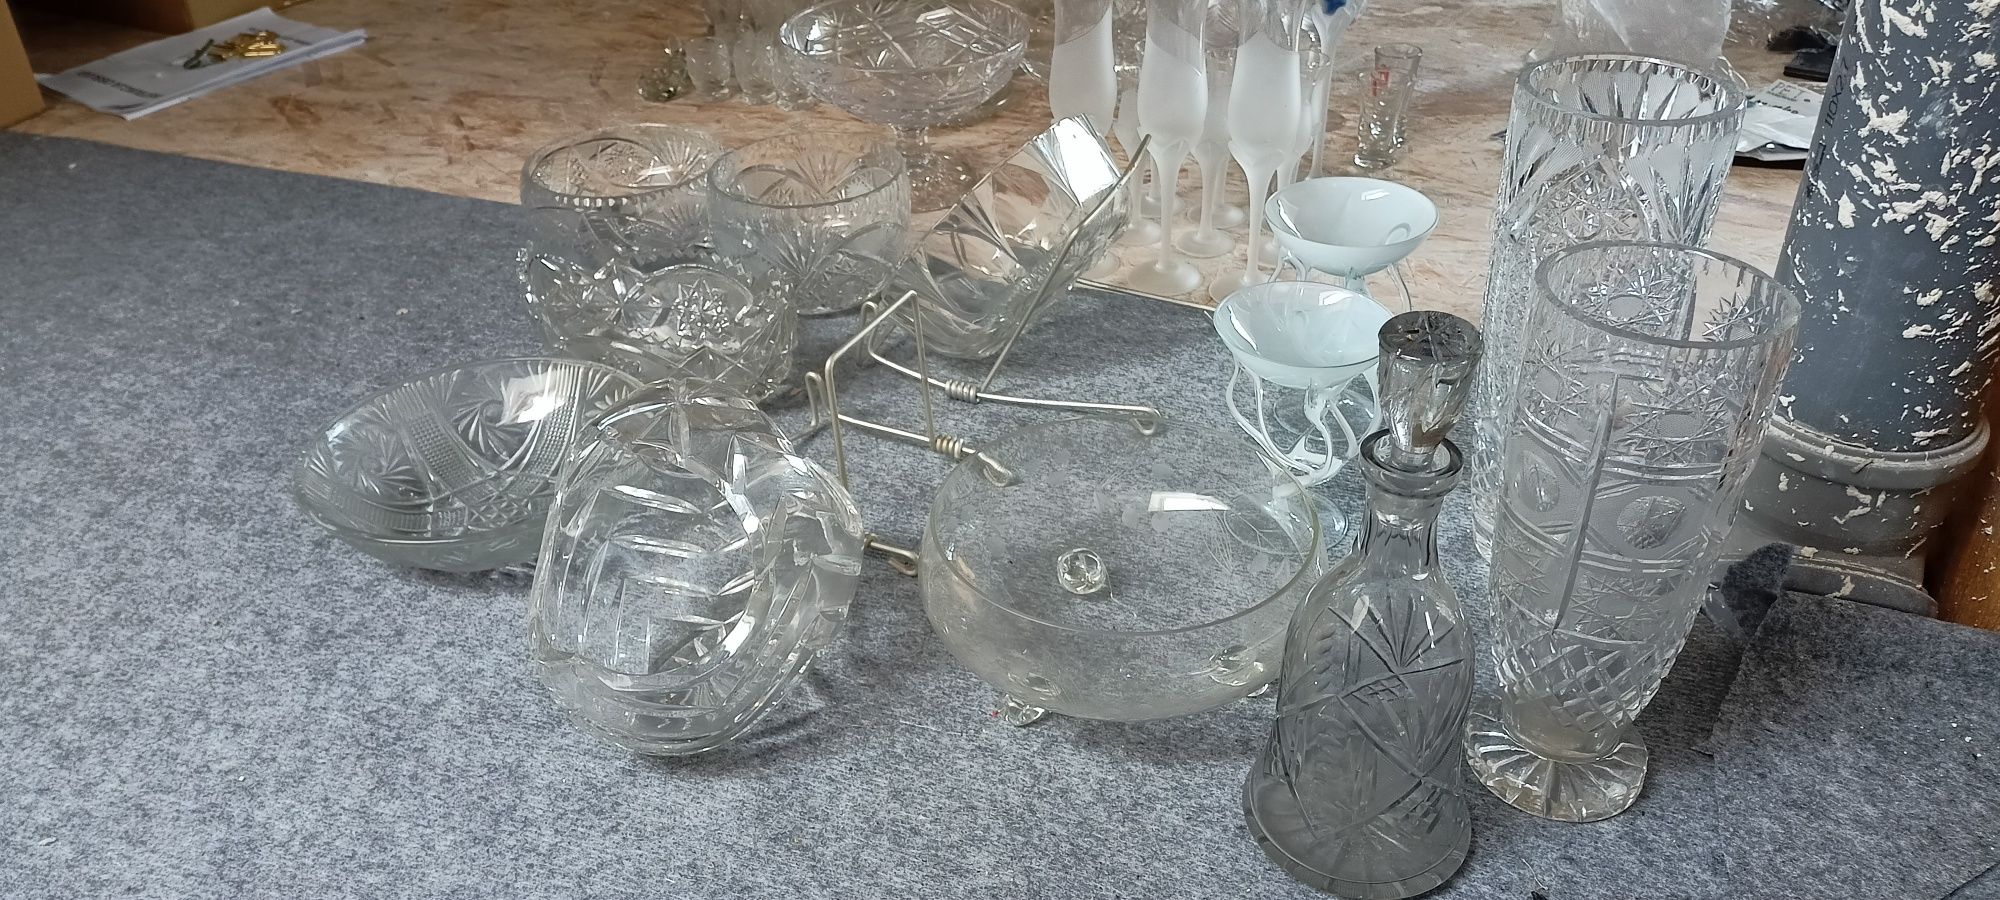 Kryształy, wazon, karafka, kieliszki, szkło